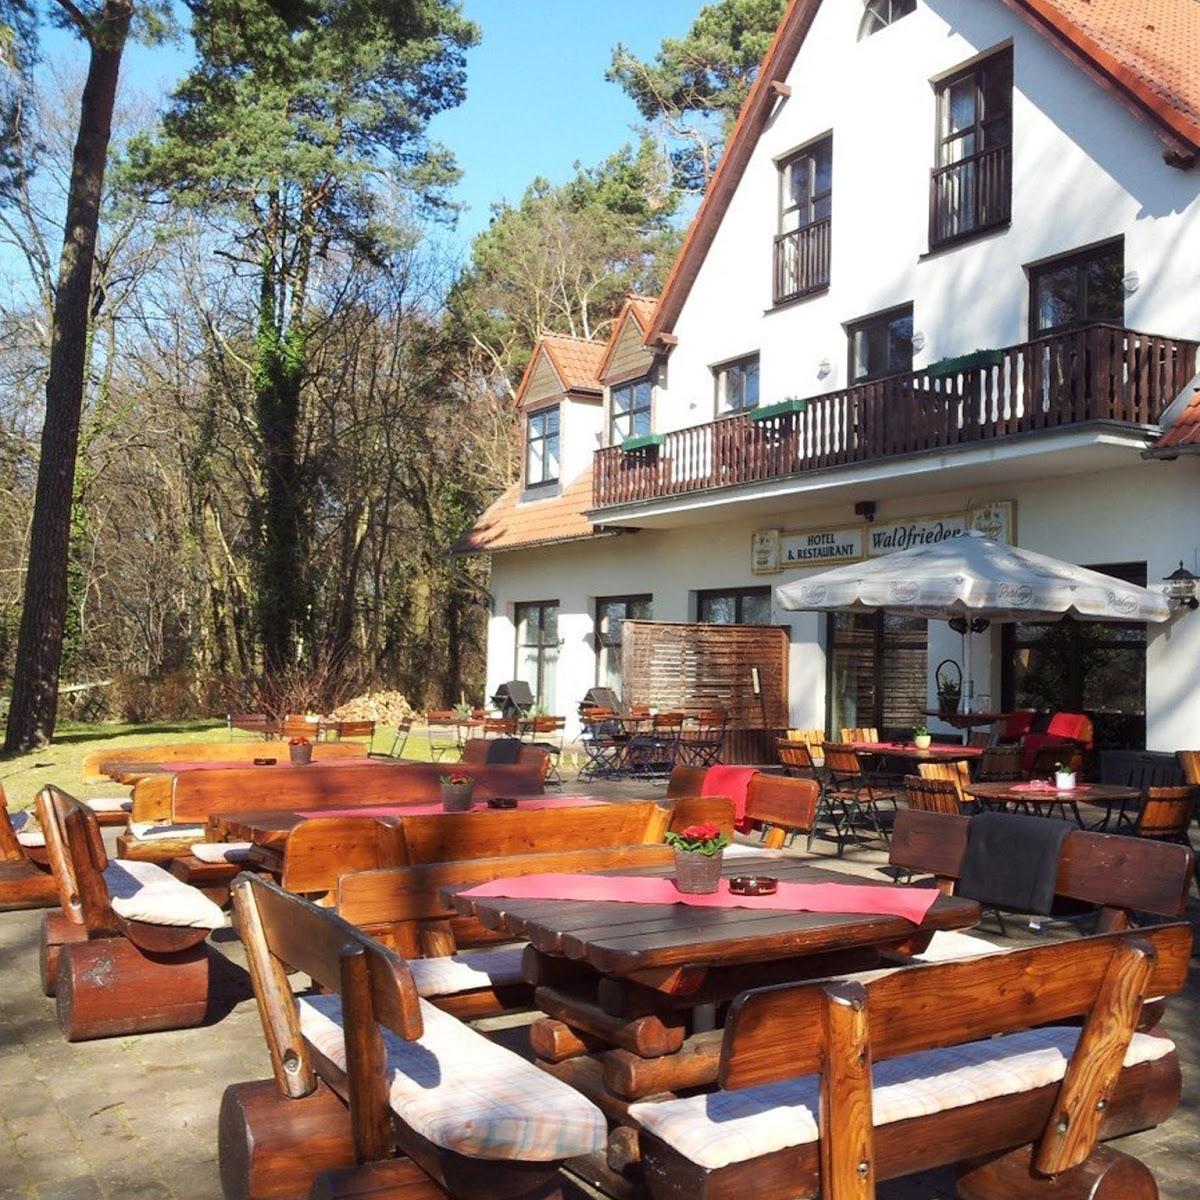 Restaurant "Hotel & Restaurant Waldfrieden" in  Neuruppin